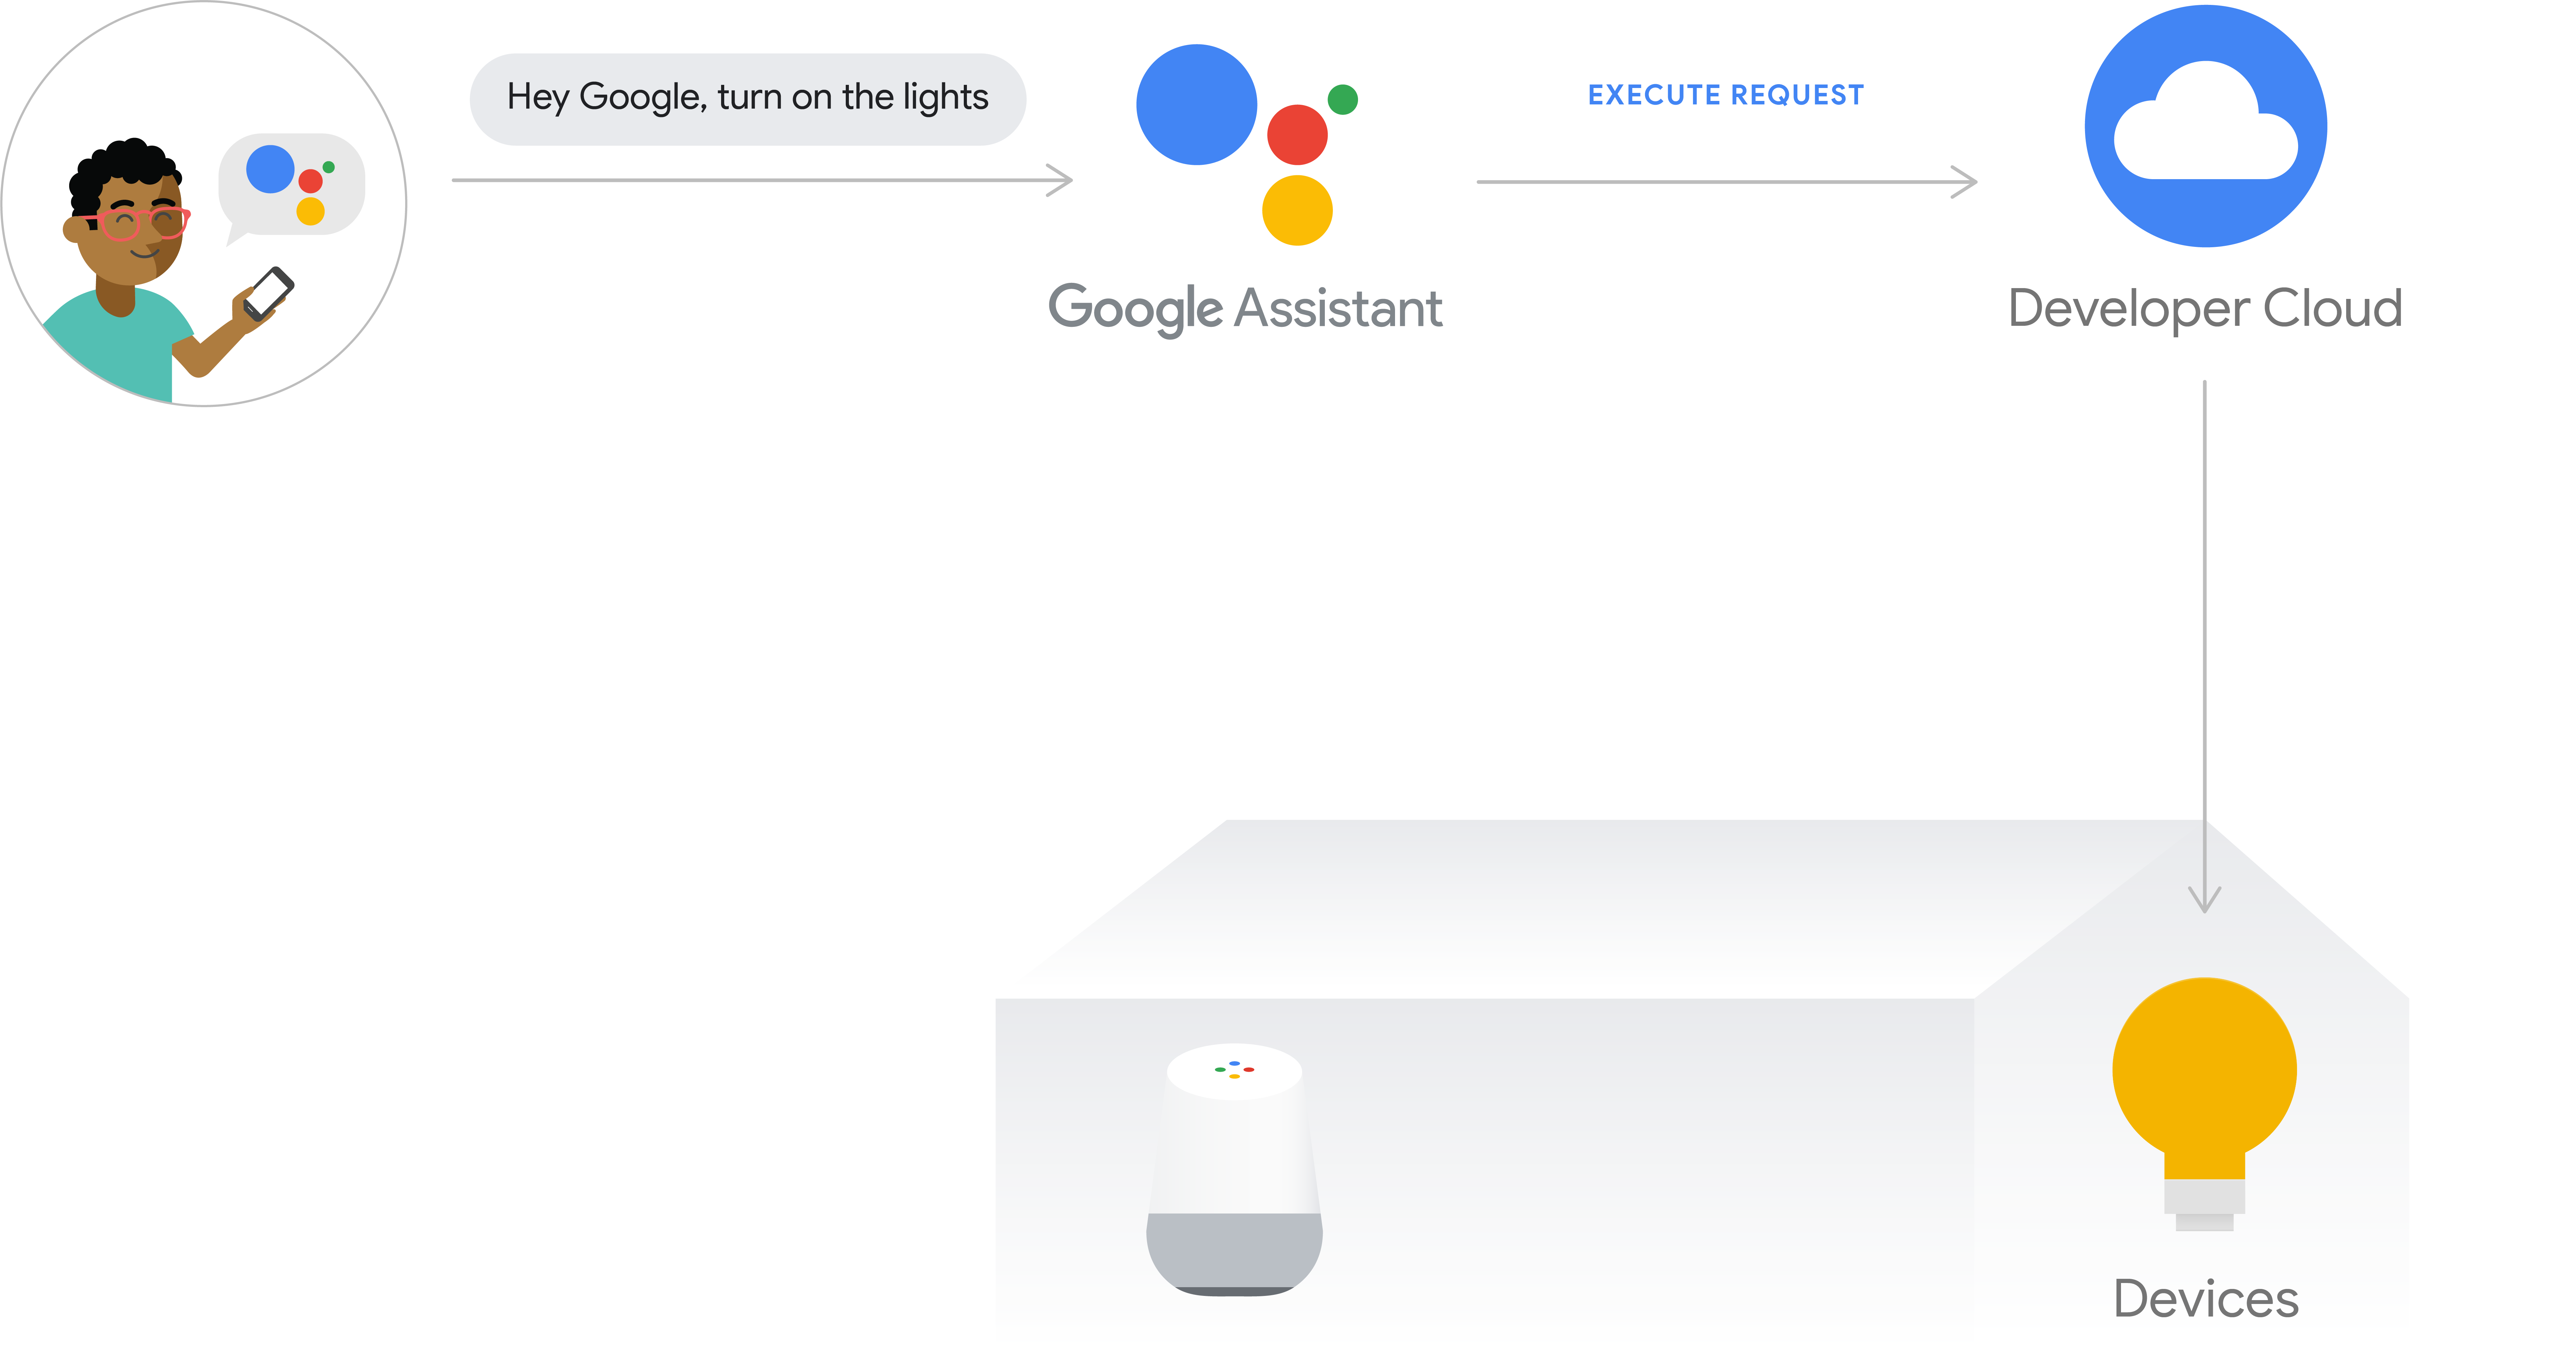 รูปนี้แสดงขั้นตอนการดําเนินการสําหรับการดําเนินการในระบบคลาวด์ เส้นทางการดําเนินการ
 บันทึกความตั้งใจของผู้ใช้จากโทรศัพท์ด้วย Google Assistant จากนั้น Google Cloud จะประมวลผลความตั้งใจของผู้ใช้ จากนั้นจะส่งคําขอไปยังระบบคลาวด์ของนักพัฒนาซอฟต์แวร์
 จากนั้นจะออกคําสั่งไปยังฮับอุปกรณ์หรือ
 ส่งไปยังอุปกรณ์โดยตรง